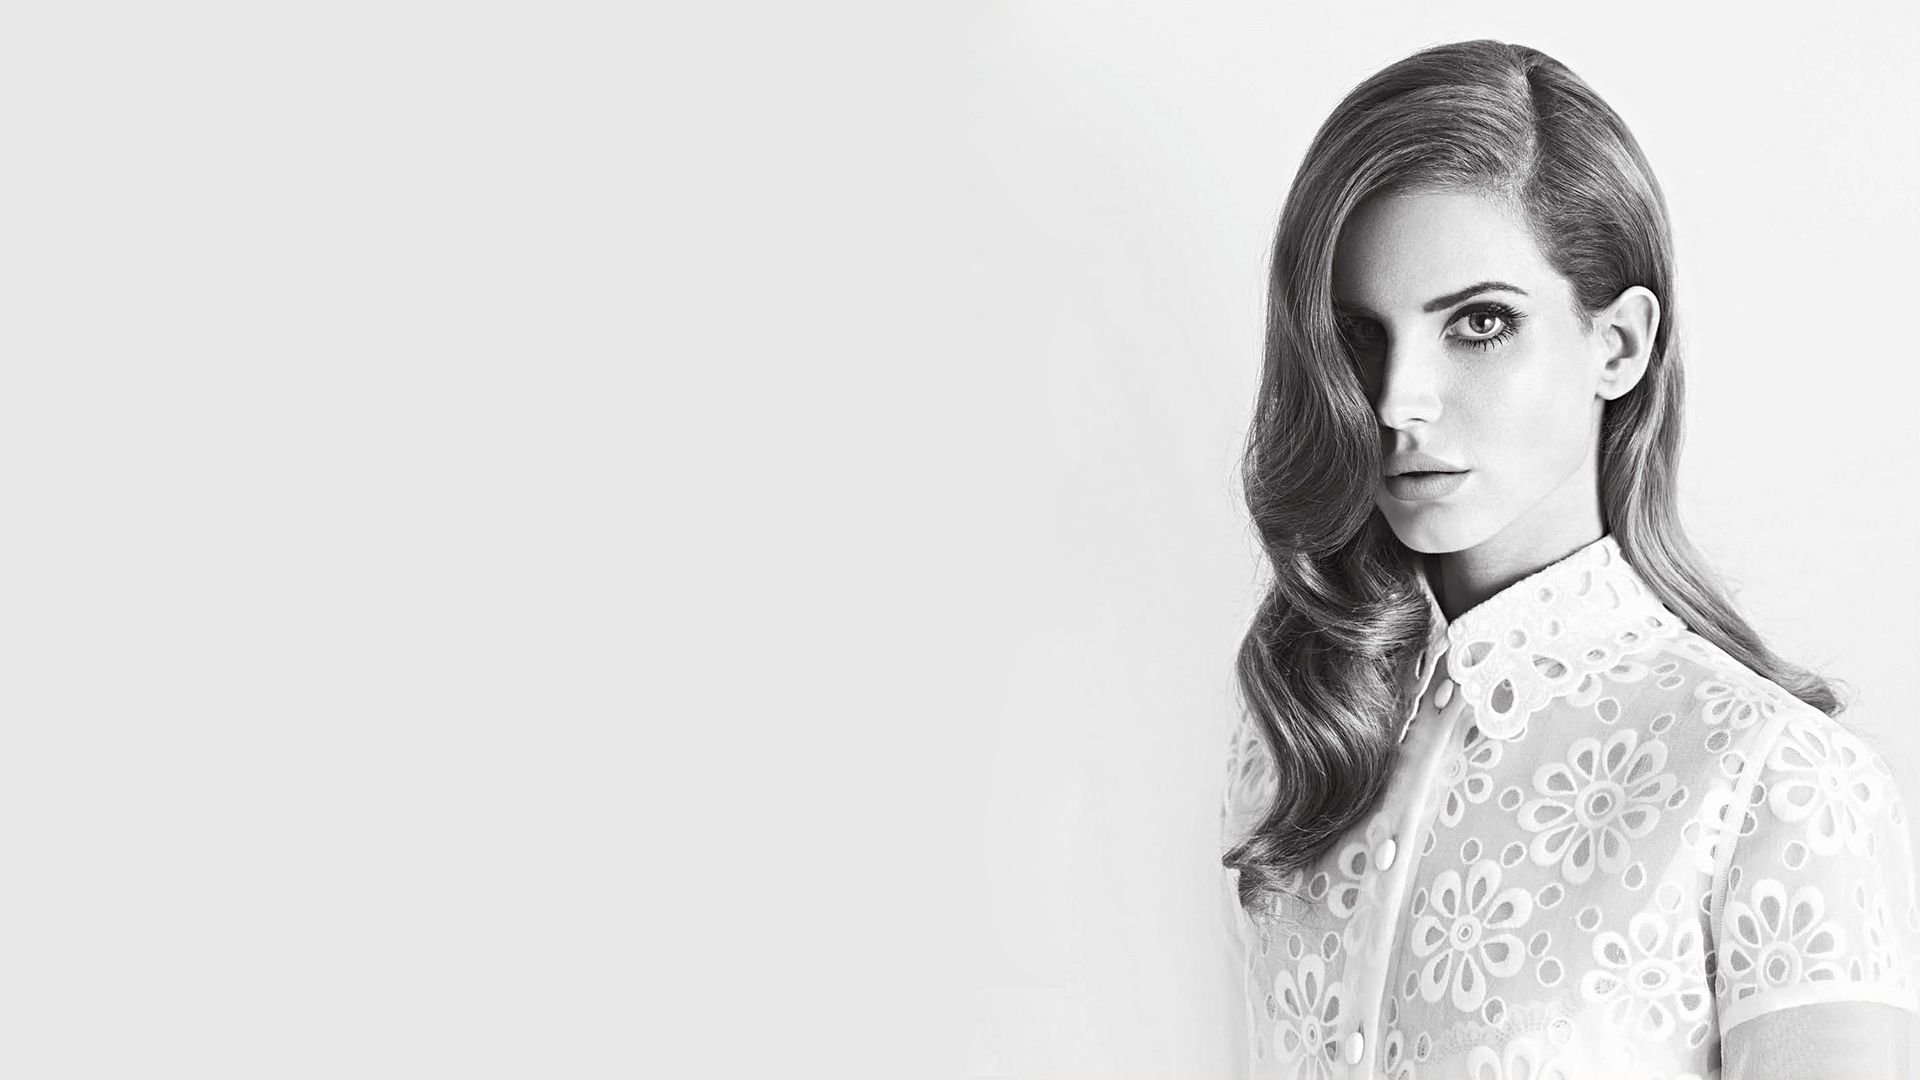 HD Lana Del Rey Wallpaper